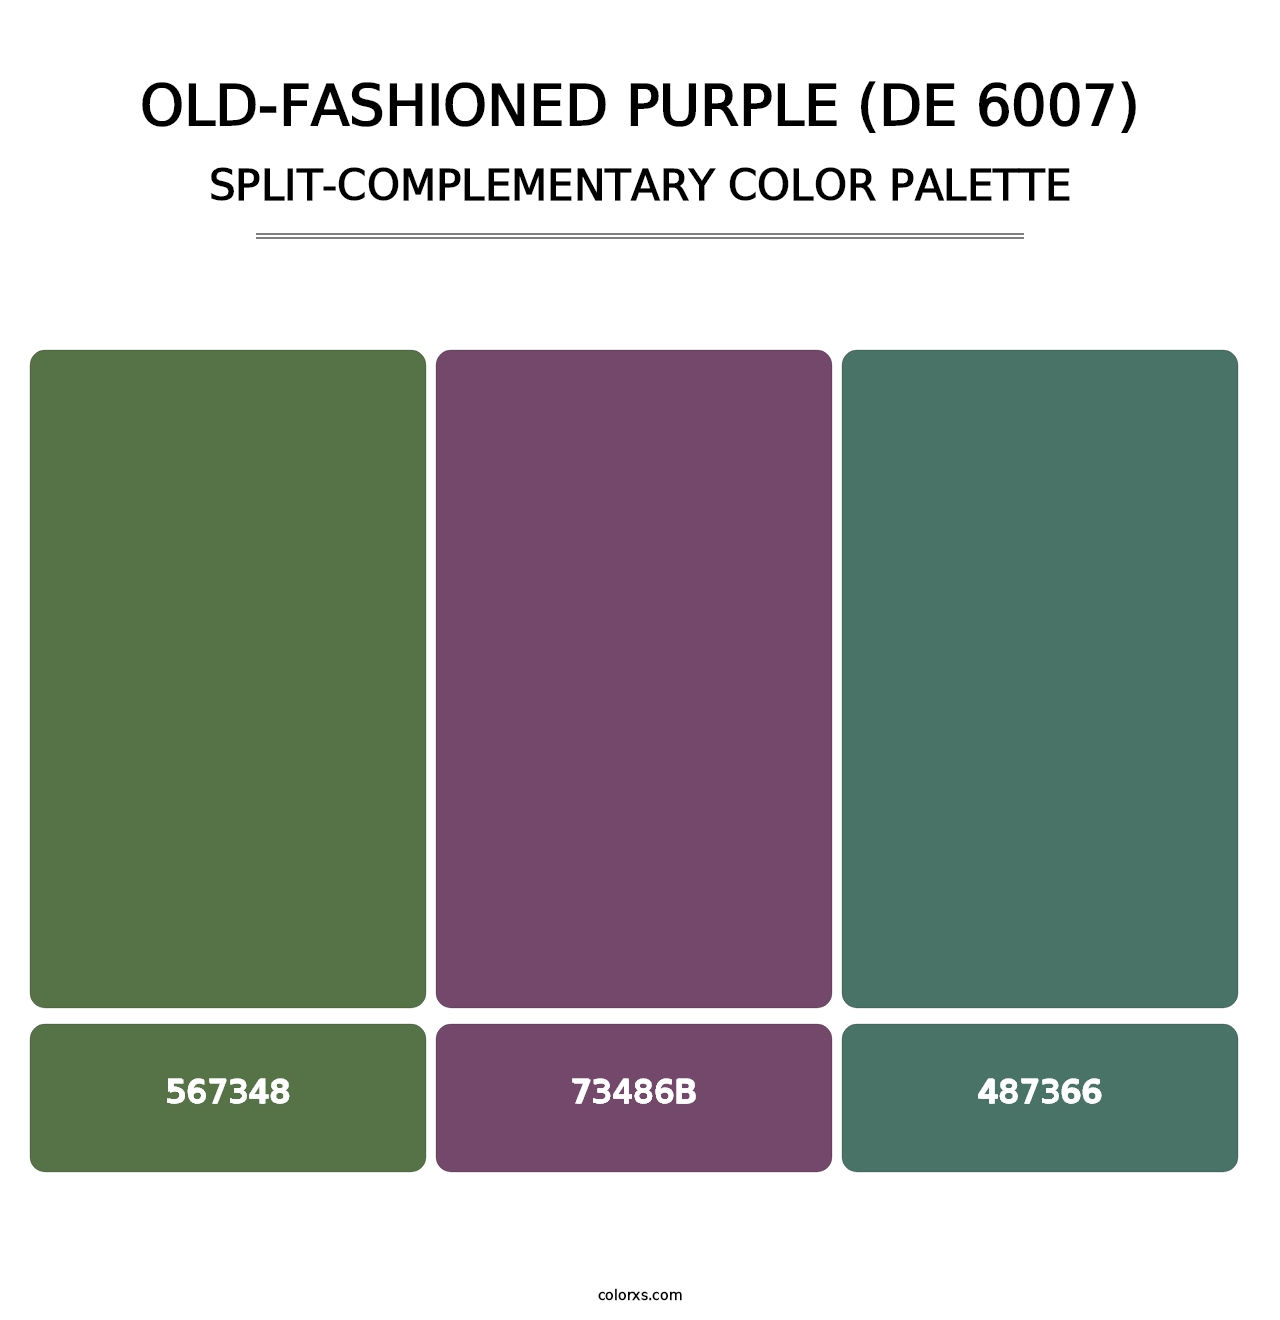 Old-Fashioned Purple (DE 6007) - Split-Complementary Color Palette